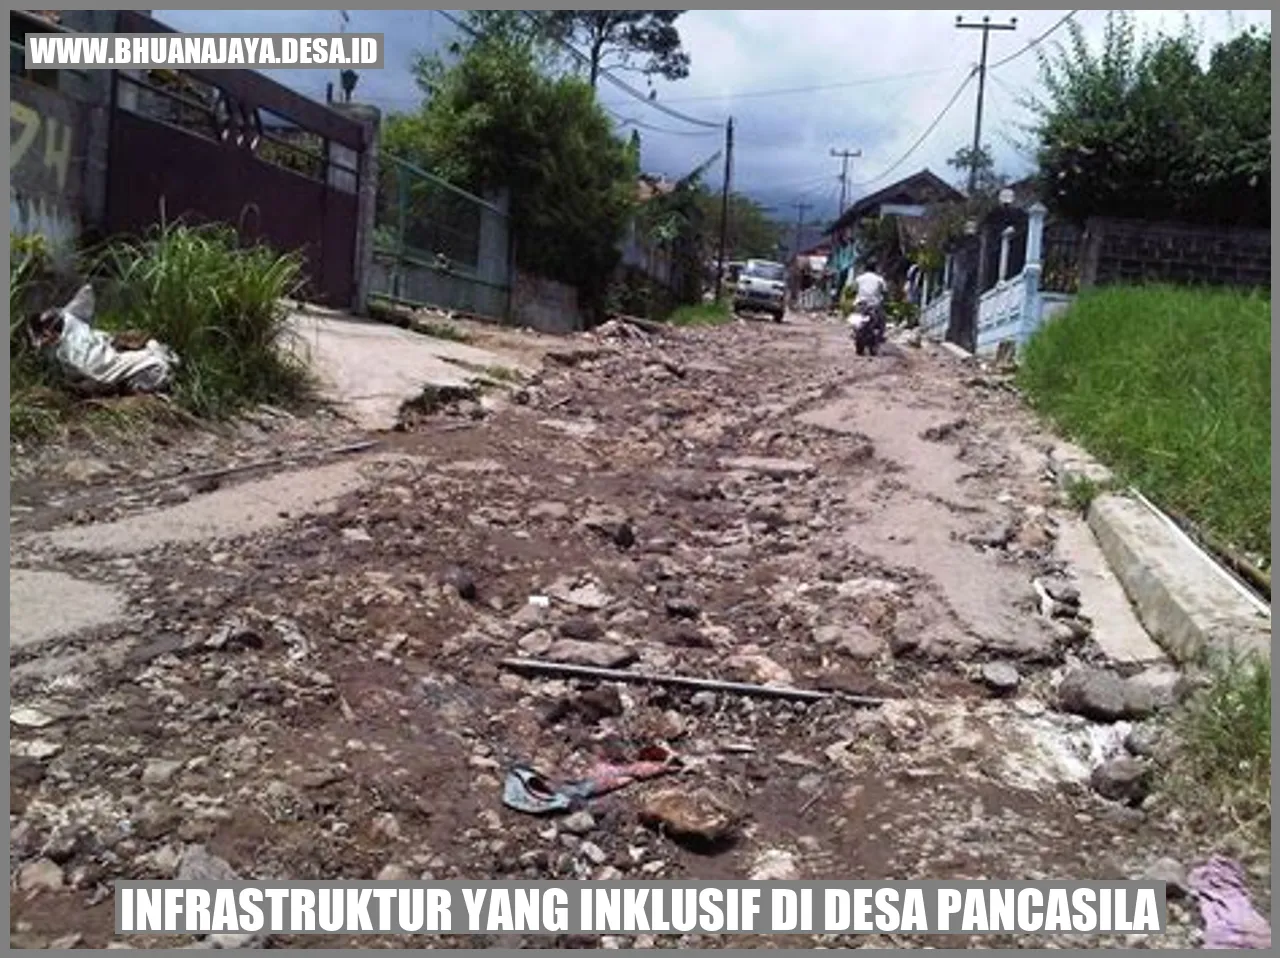 Infrastruktur yang inklusif di Desa Pancasila